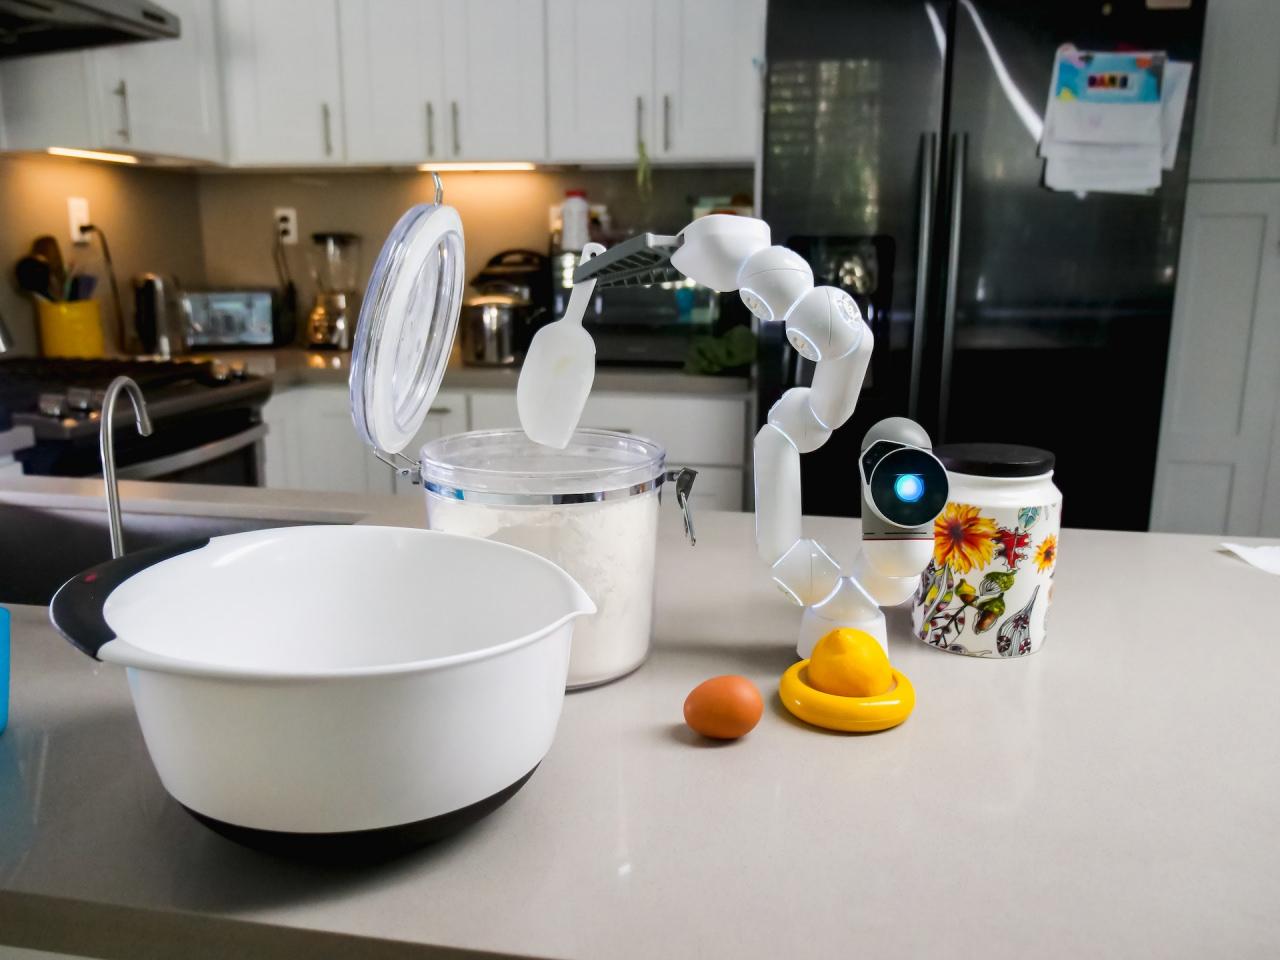 Yapay zekaya sahip yemek yapan bir robot